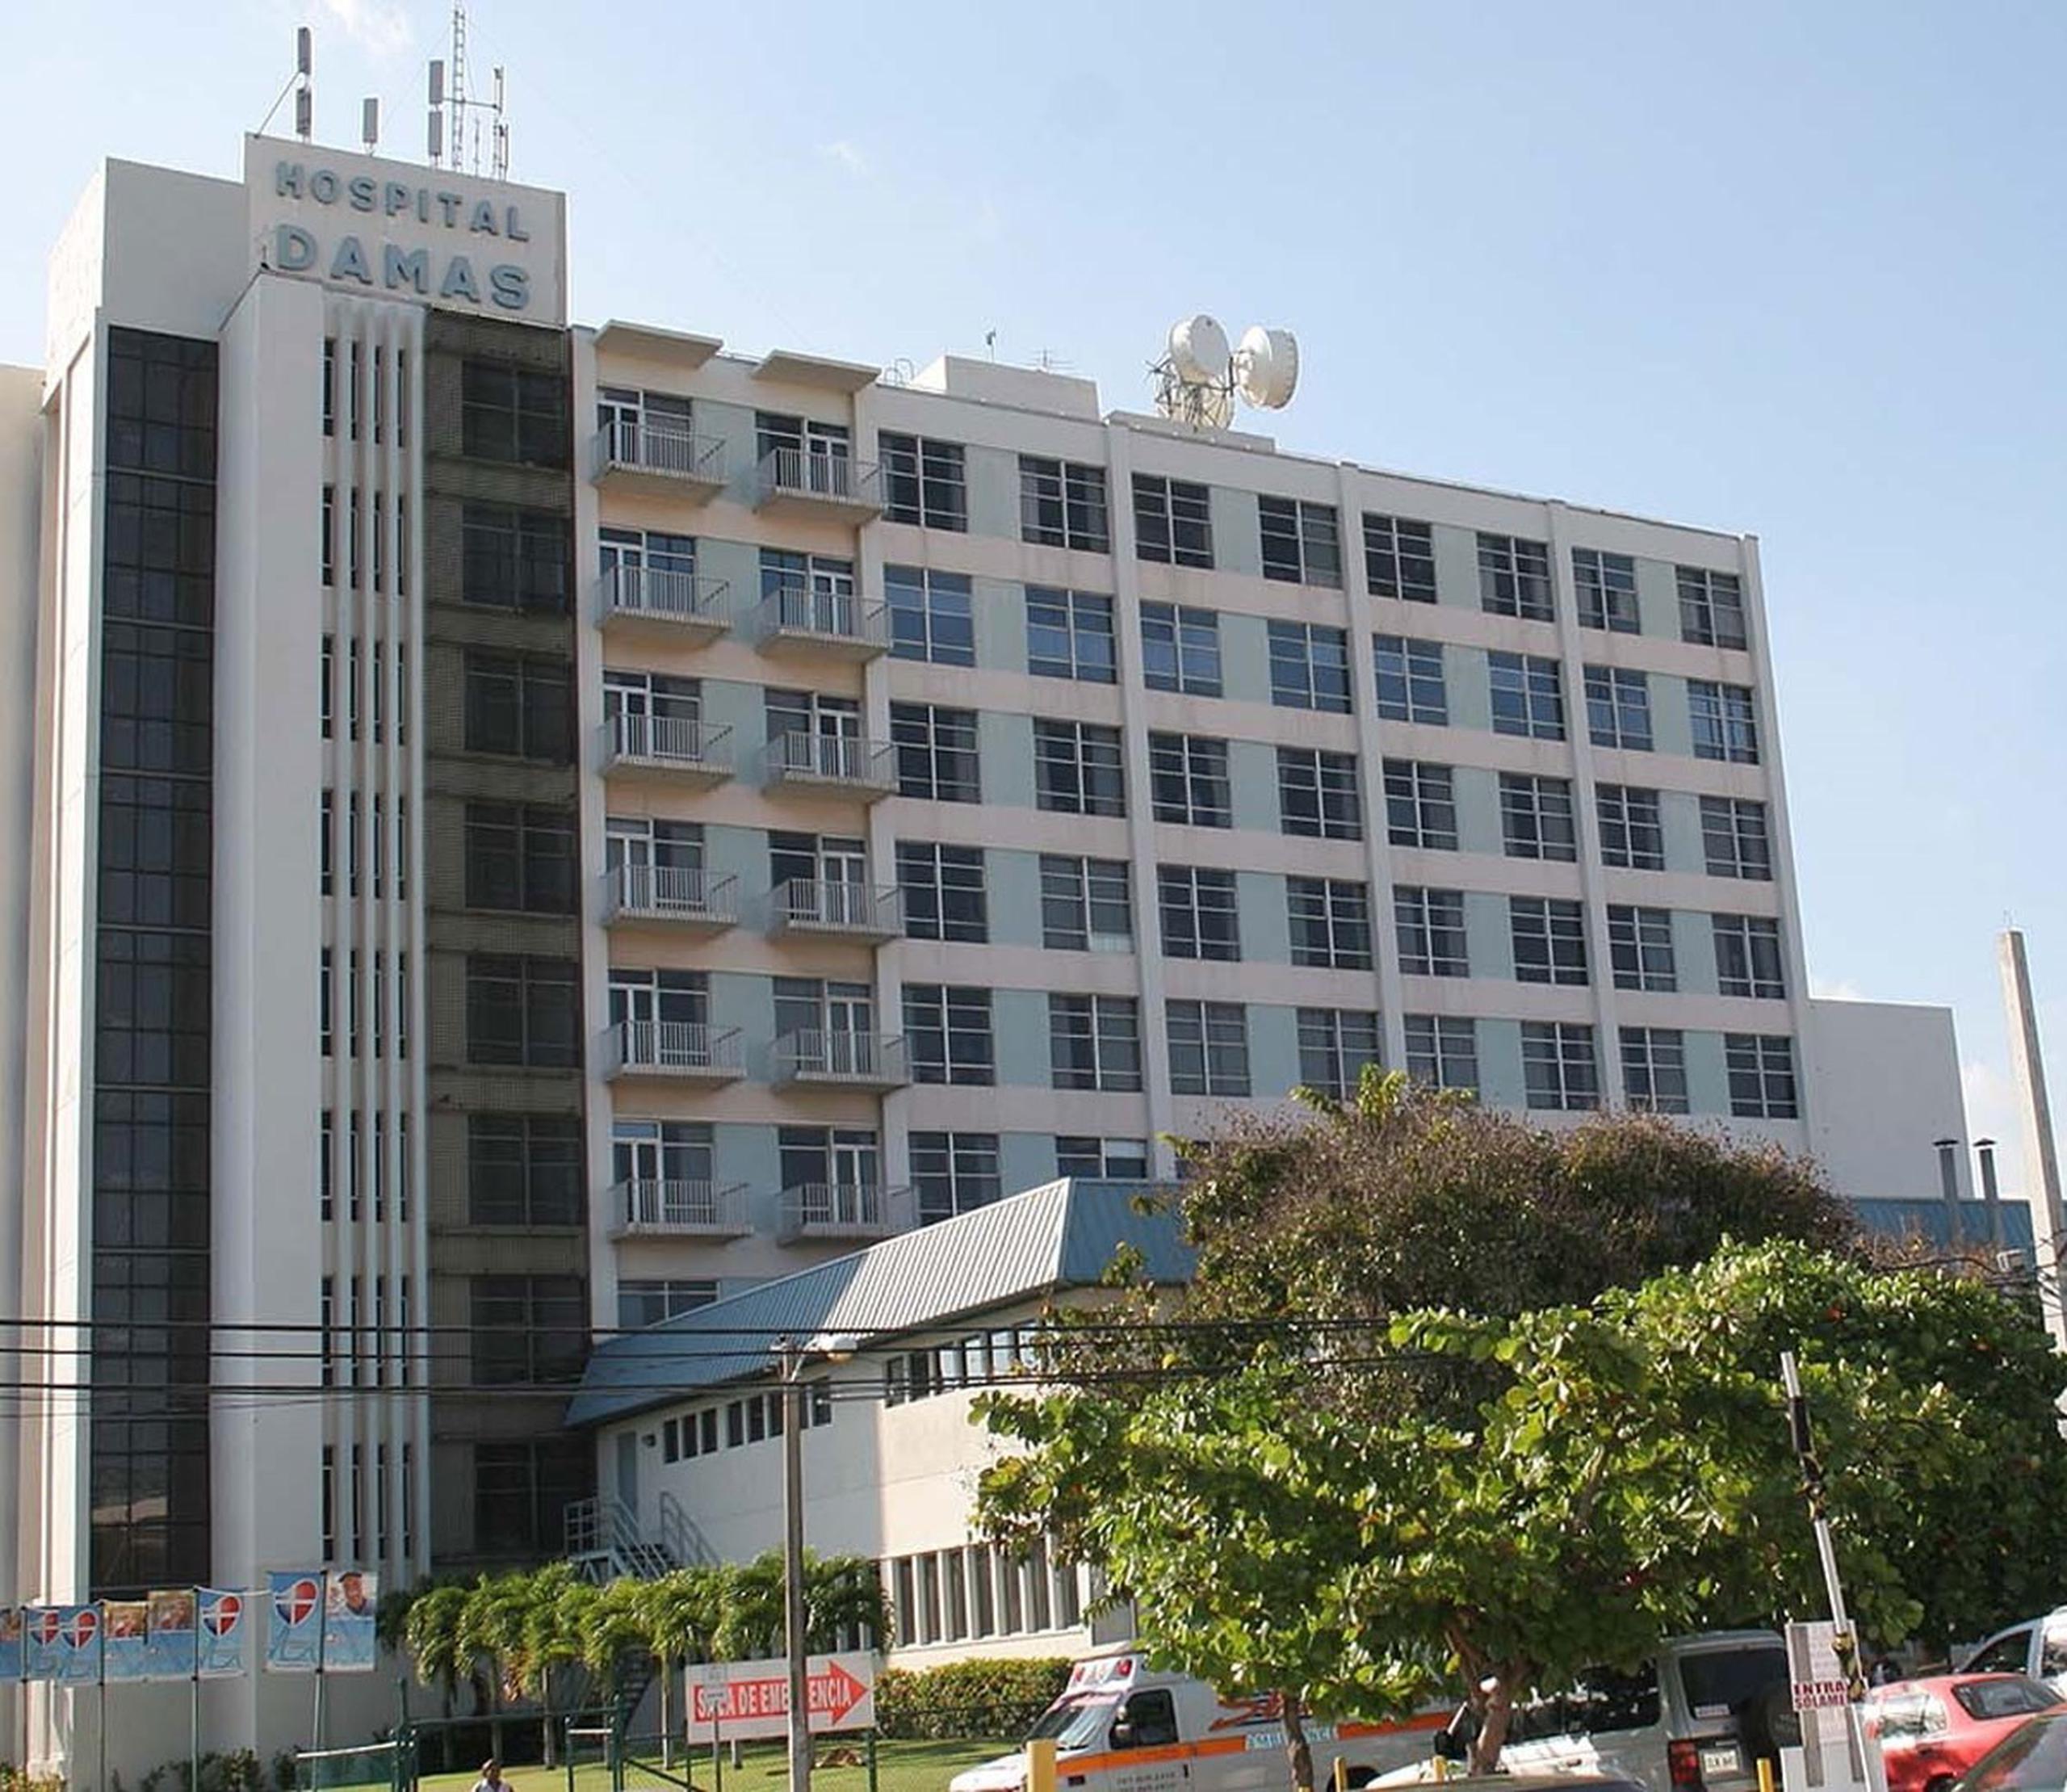 En el Hospital Damas, de Ponce, y el Hospital Santa Rosa, en Guayama, han notado una disminución en el volumen de pacientes, lo que ambas instituciones también le achacan a la falta de contrataciones de proveedores. (GFR Media)